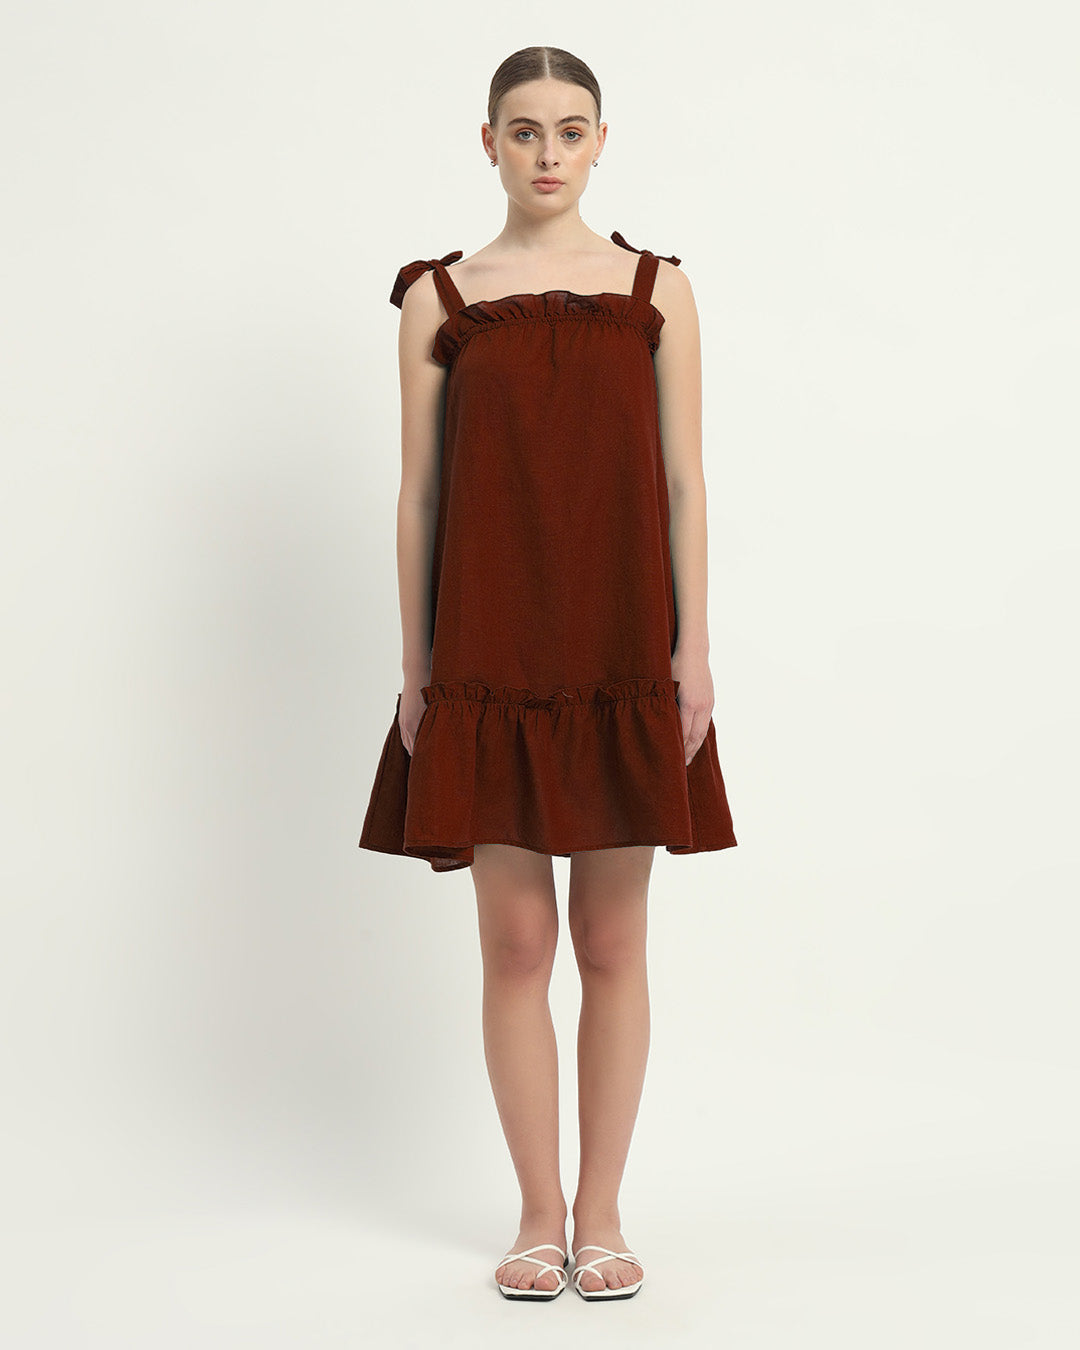 The Amalfi Rouge Cotton Dress